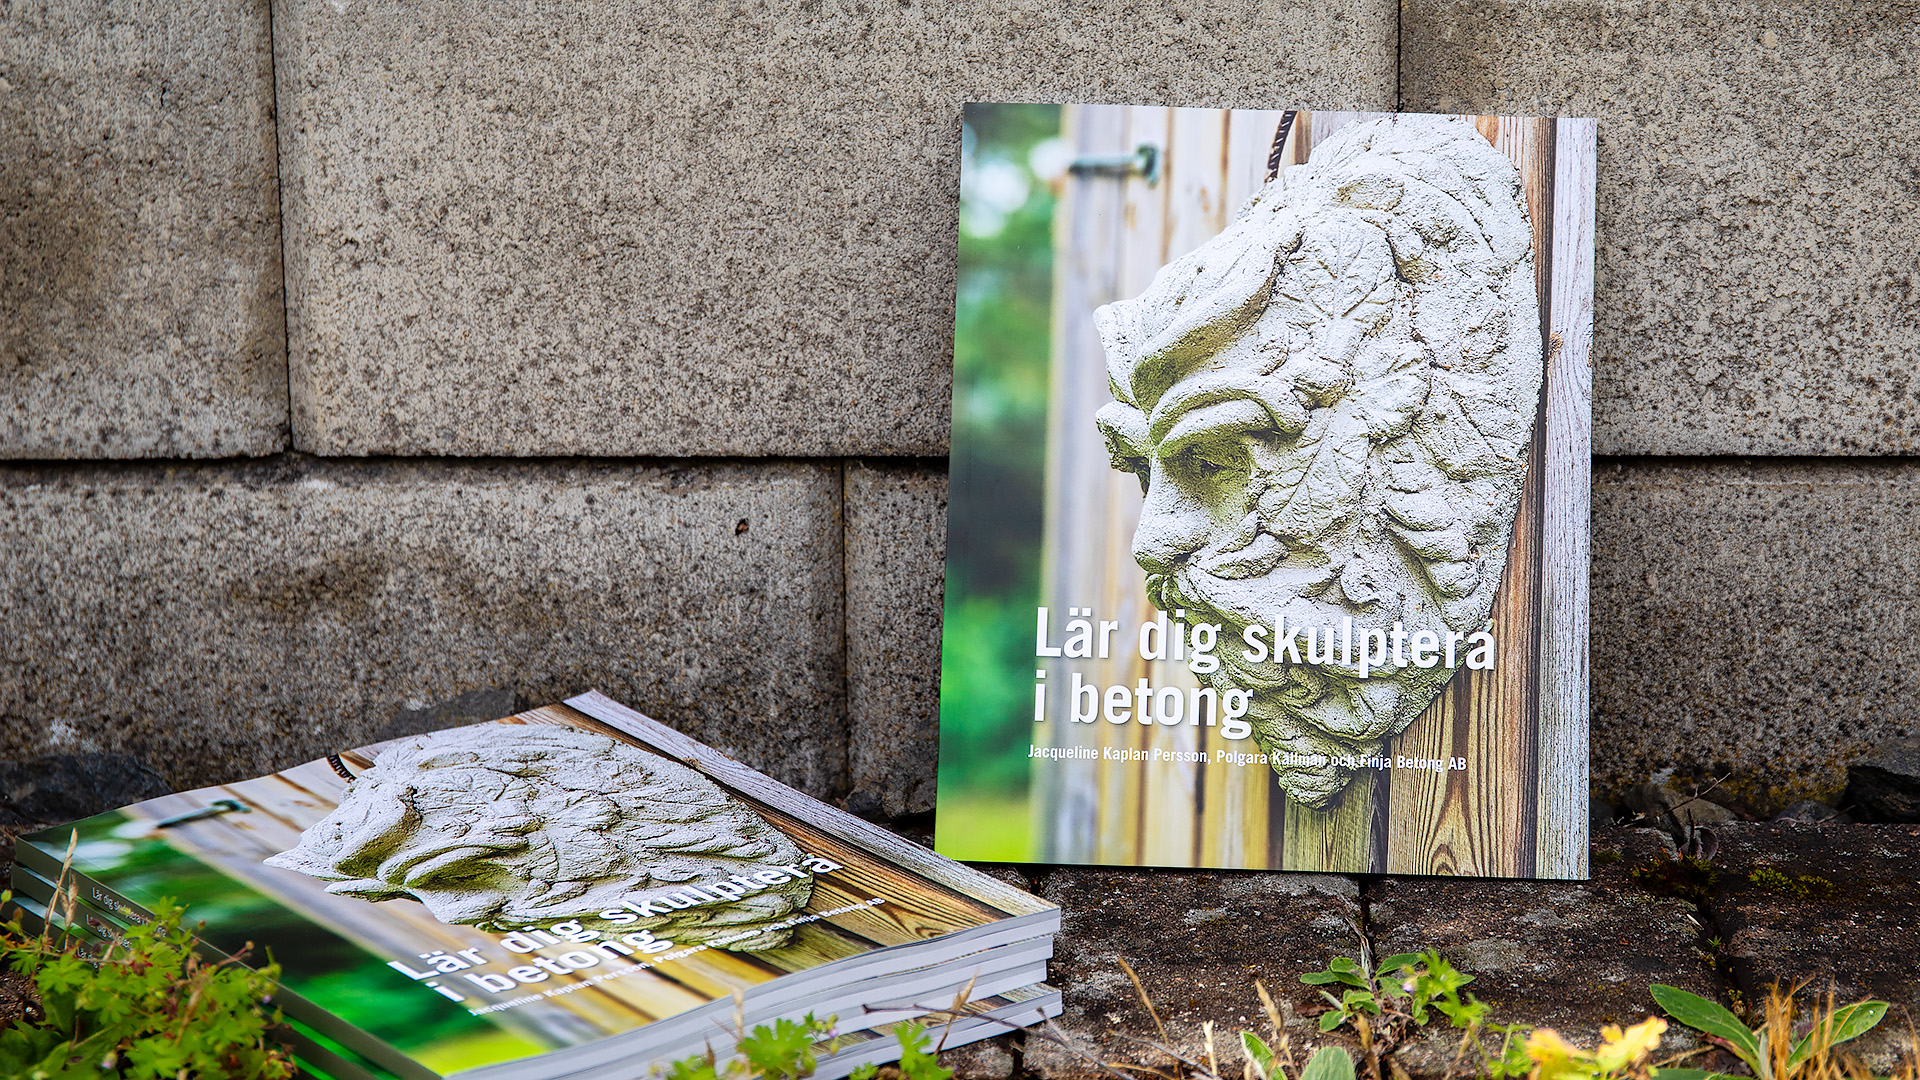 Finja Betong har tillsammans konstnären Jackie Kaplan Persson tagit fram en e-bok med syftet att inspirera fler att börja skulptera i betong.